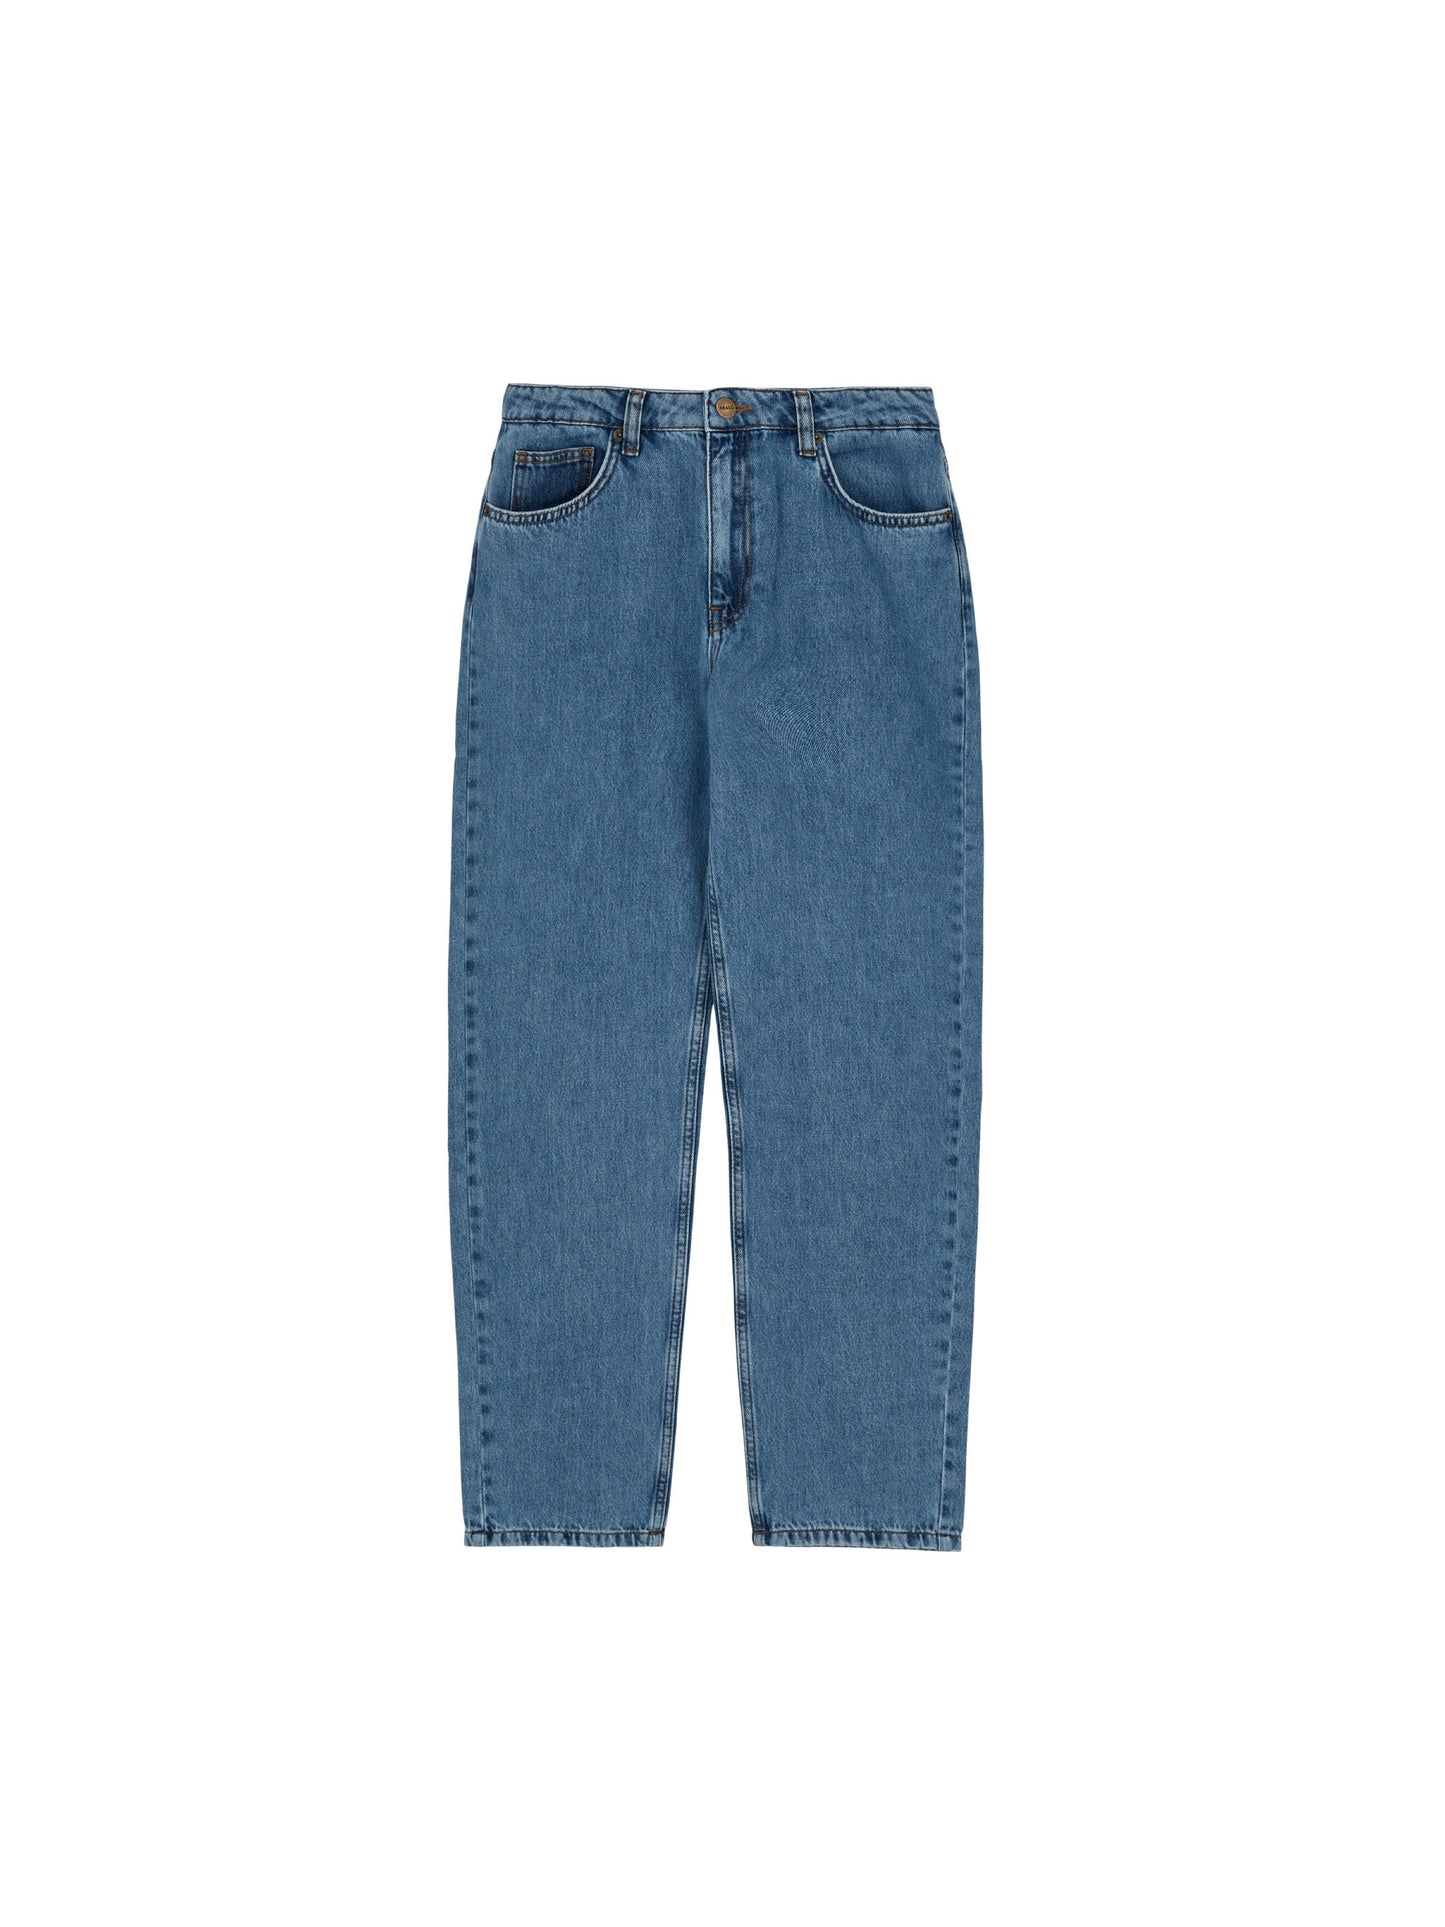 Skall - Allison cropped jeans - Washed blue